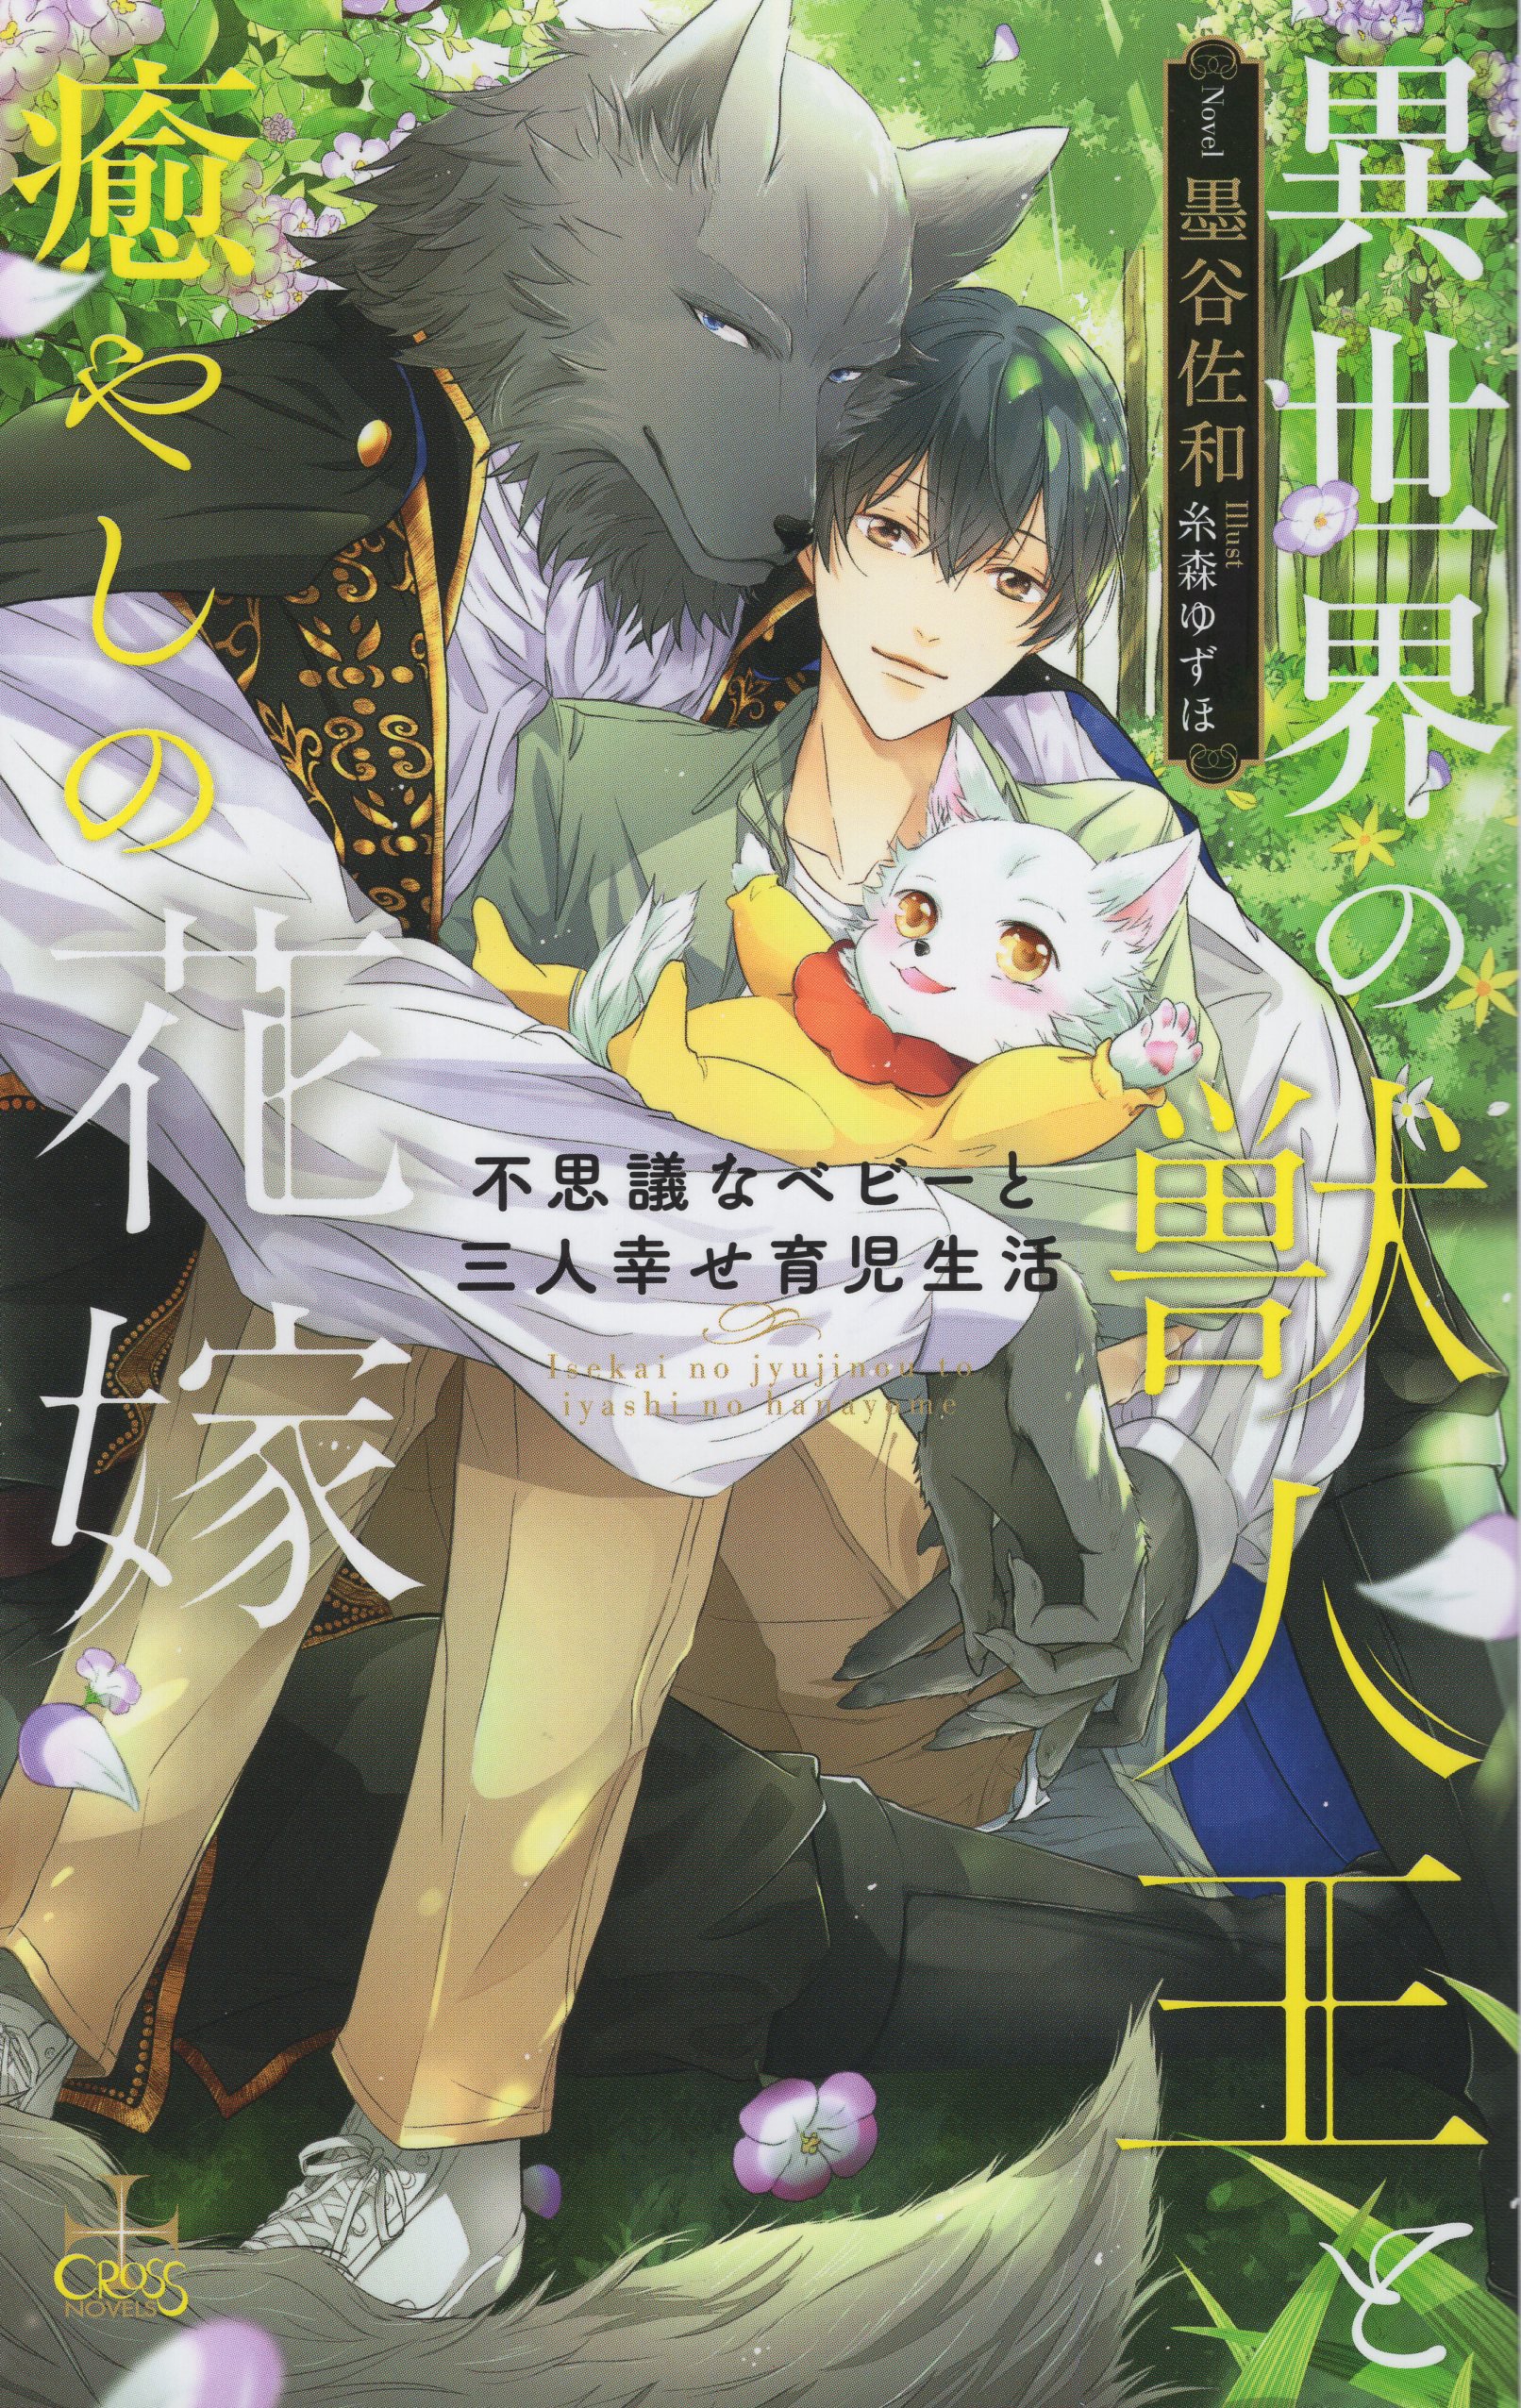 Juujin-san to Ohana-chan (Hana and the Beast Man) | Manga - MyAnimeList.net